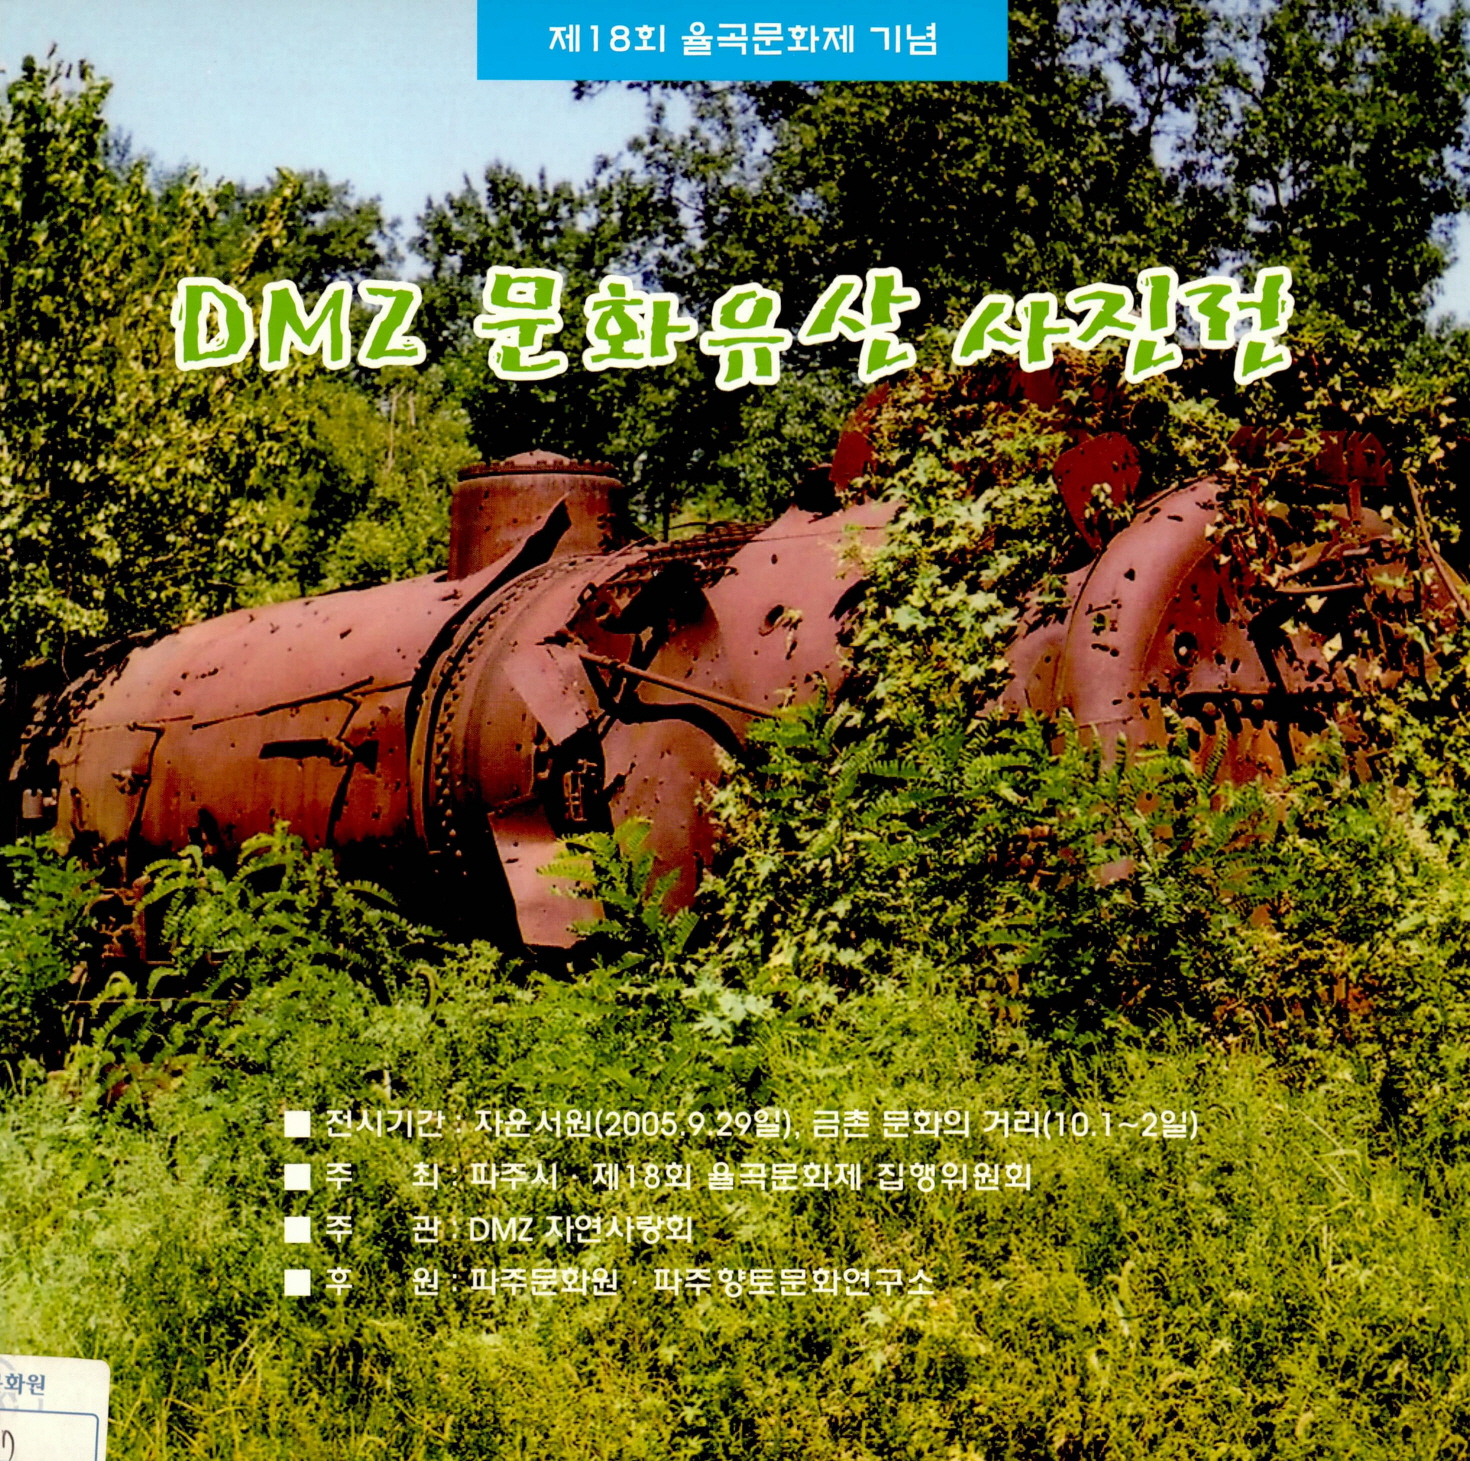 제18회 율곡문화제 기념 DMZ 문화유산 사진전